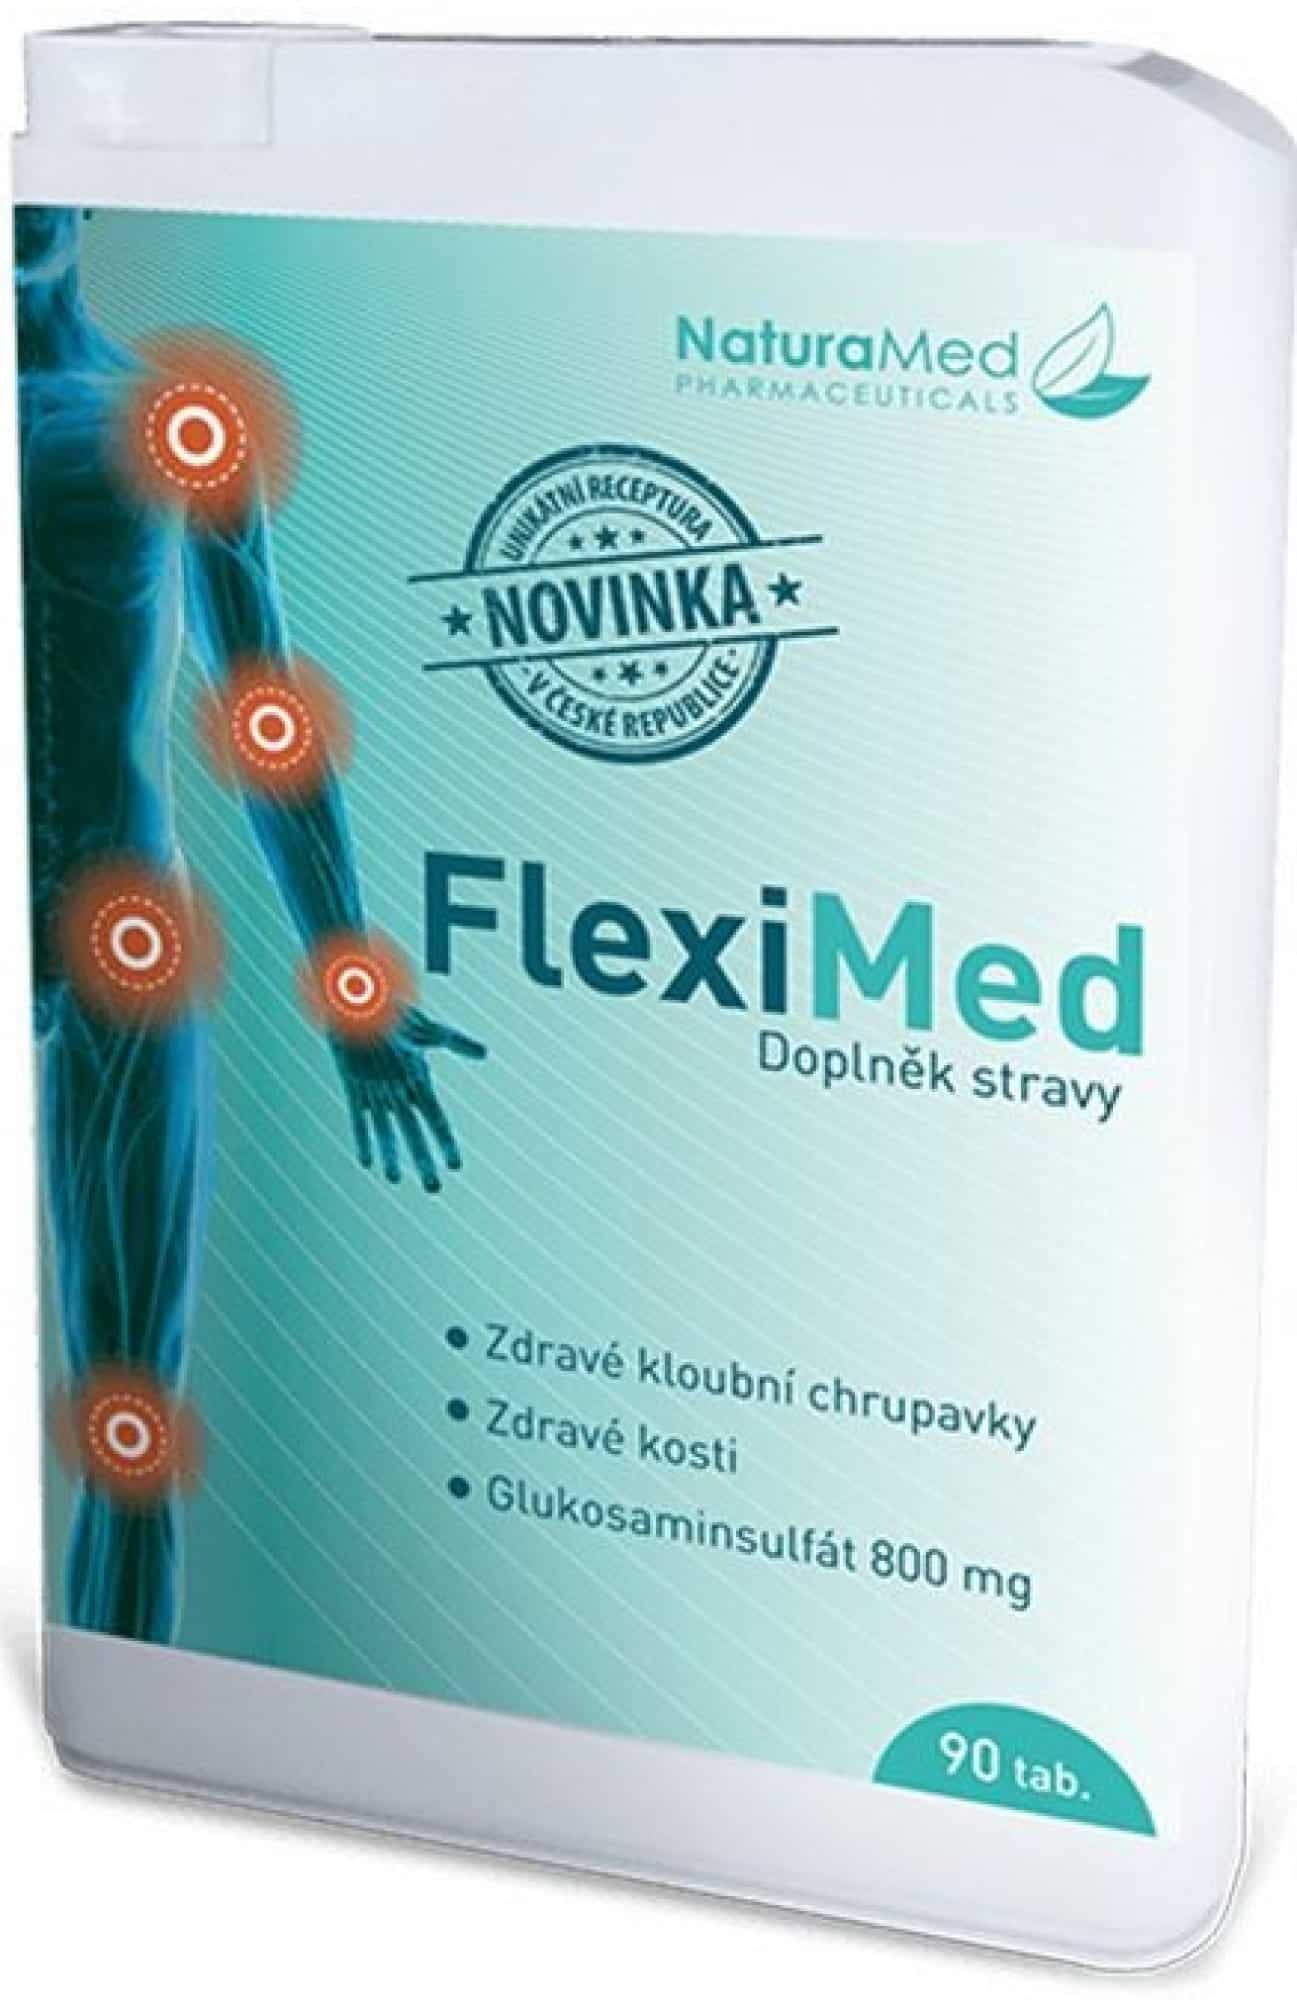 Fleximed: Pomůže vám tato kloubní výživa? (recenze)